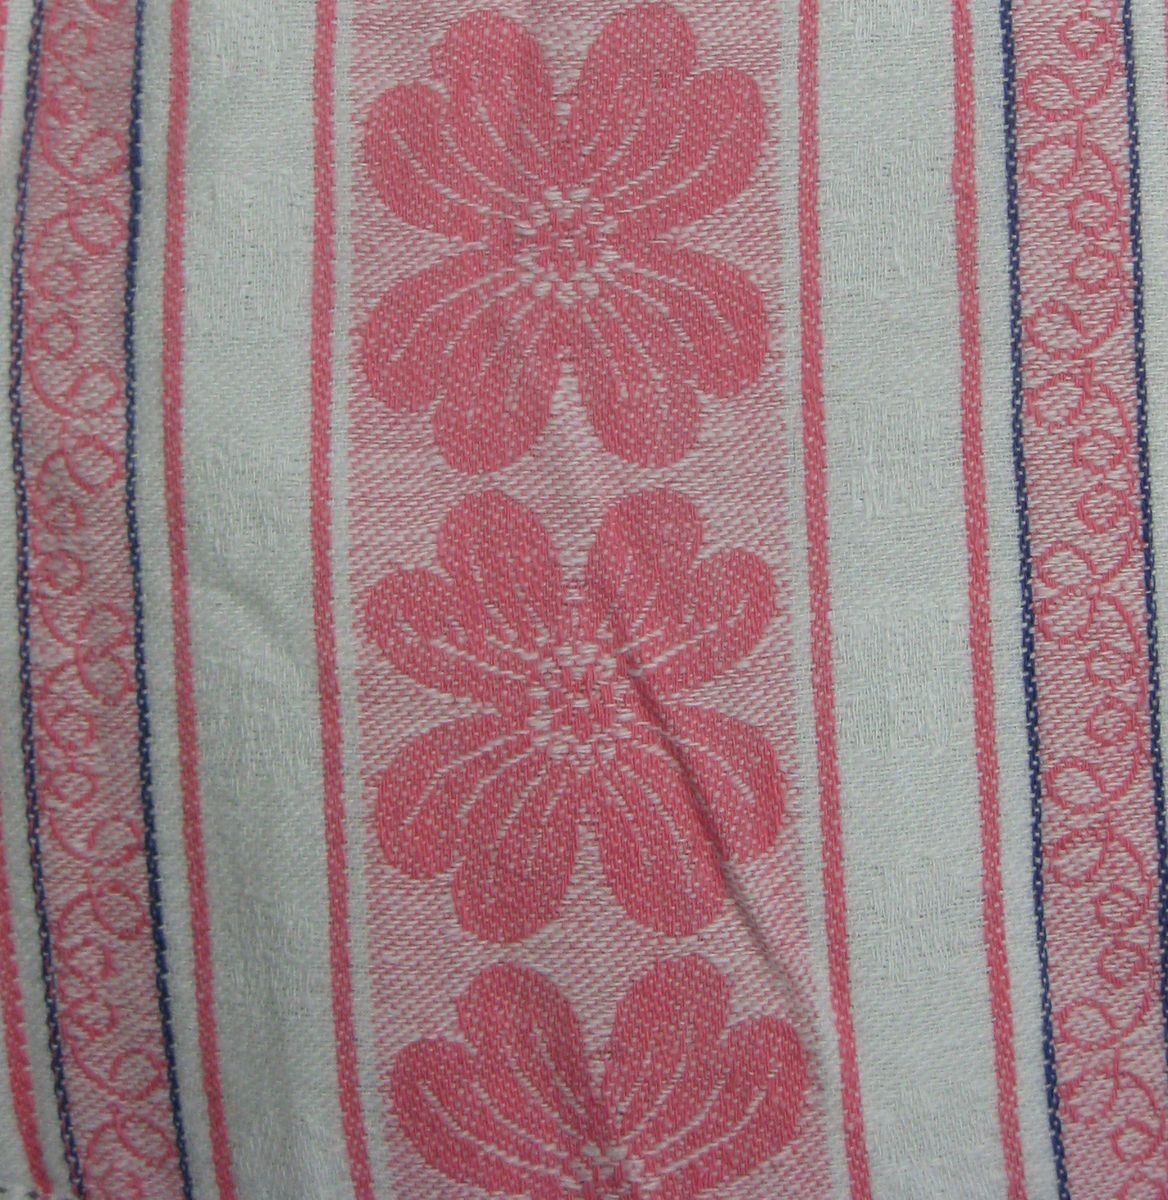 Vintage Cotton Pink Floral Tablecloth Estate Find